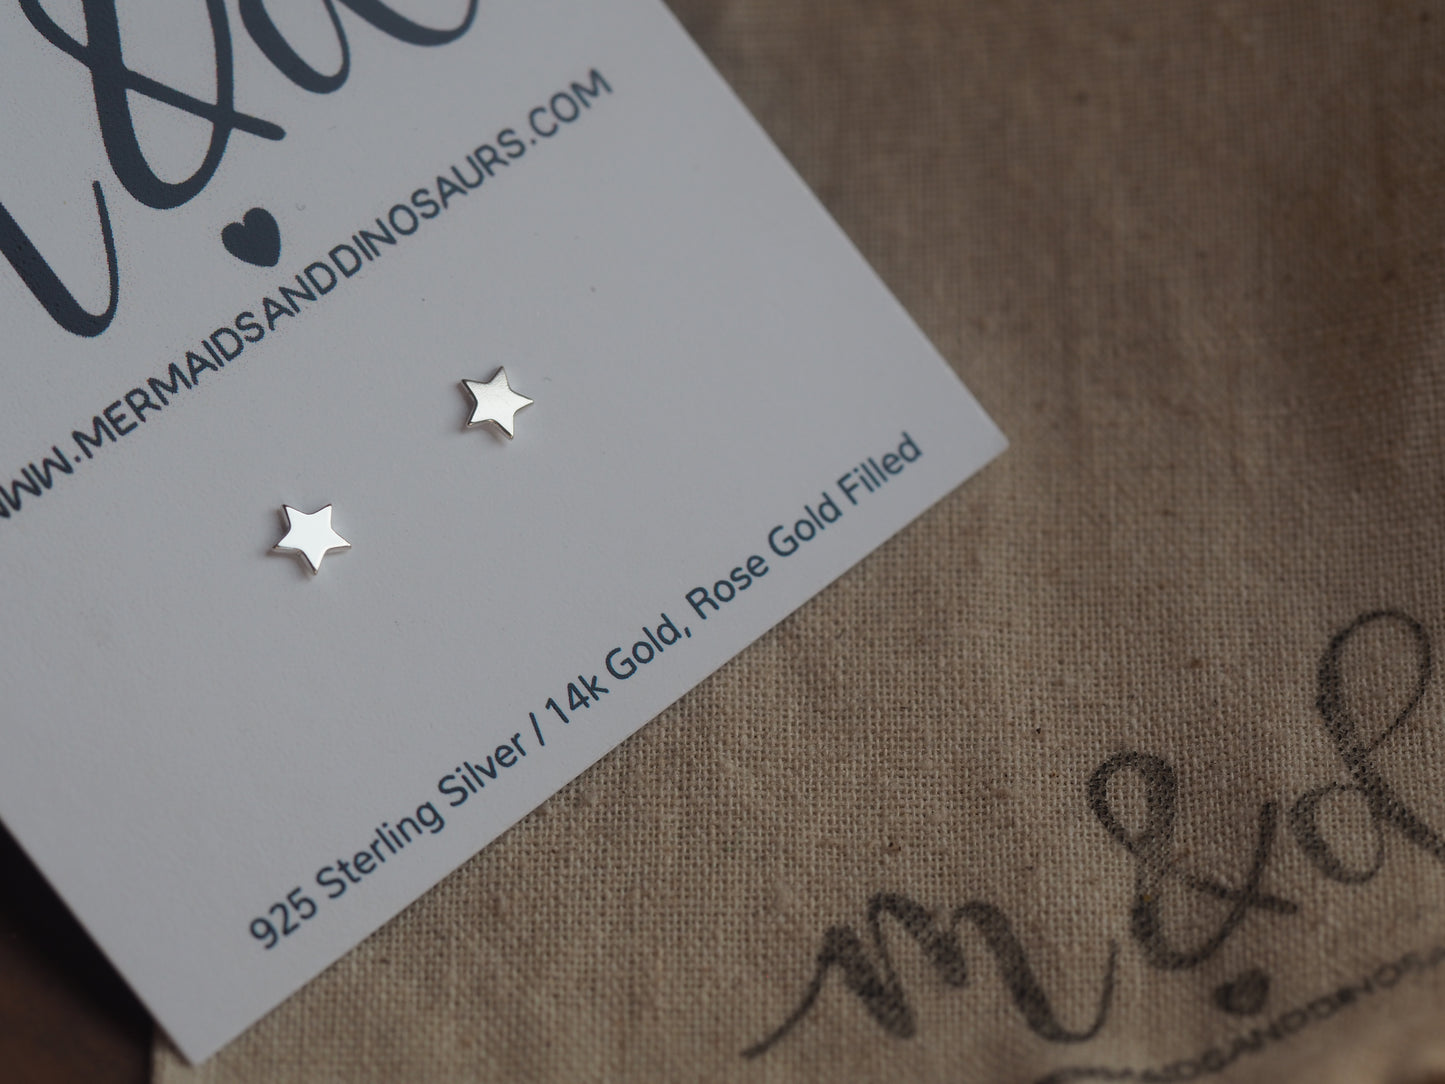 Sterling silver star earrings